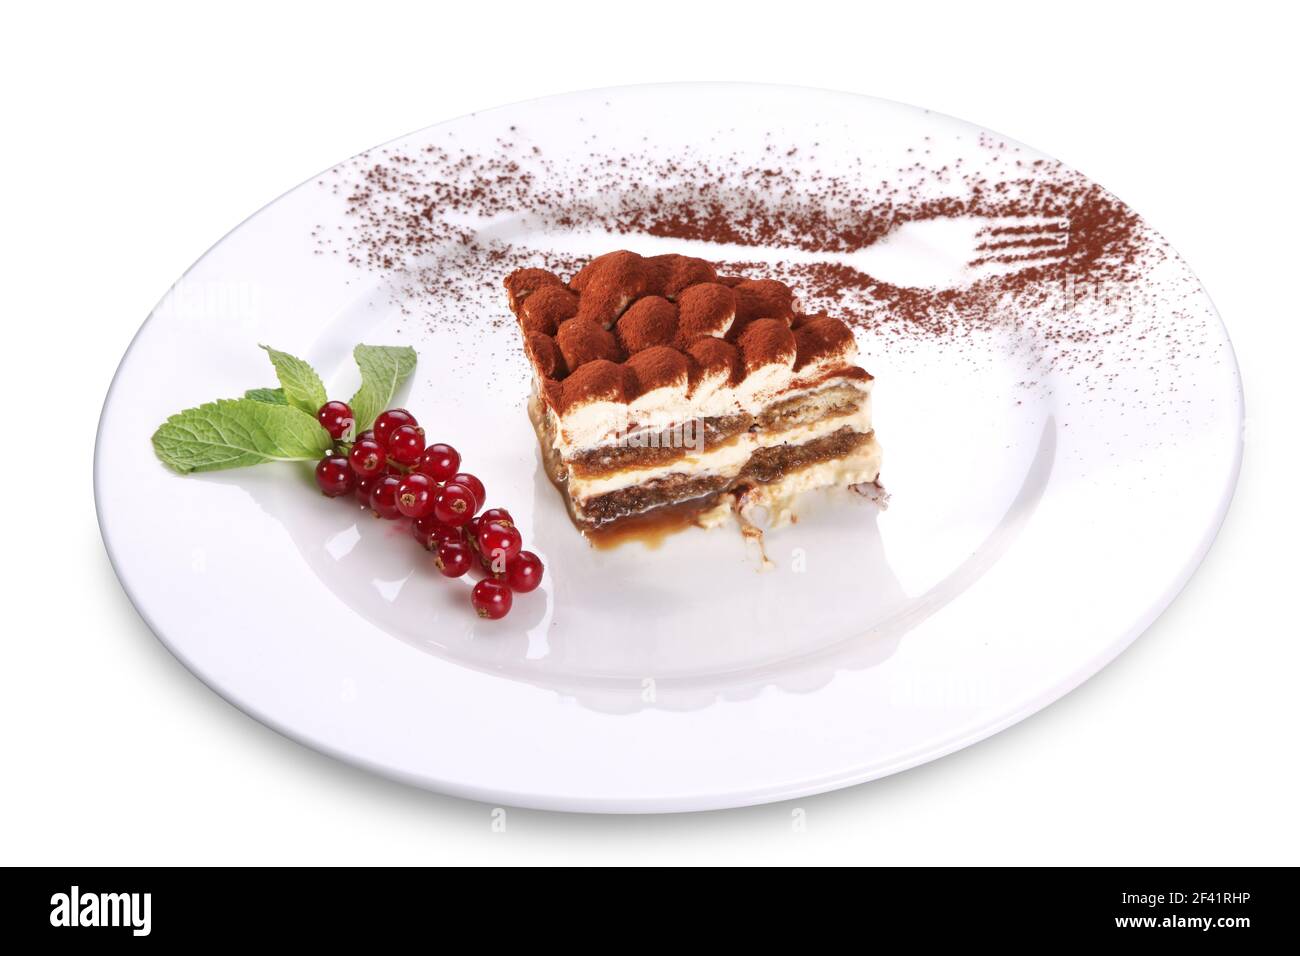 Scheibe Tiramisu Kuchen und und frische Beeren auf weißem Teller isoliert auf weißem Hintergrund. Datei enthält Beschneidungspfad. Stockfoto